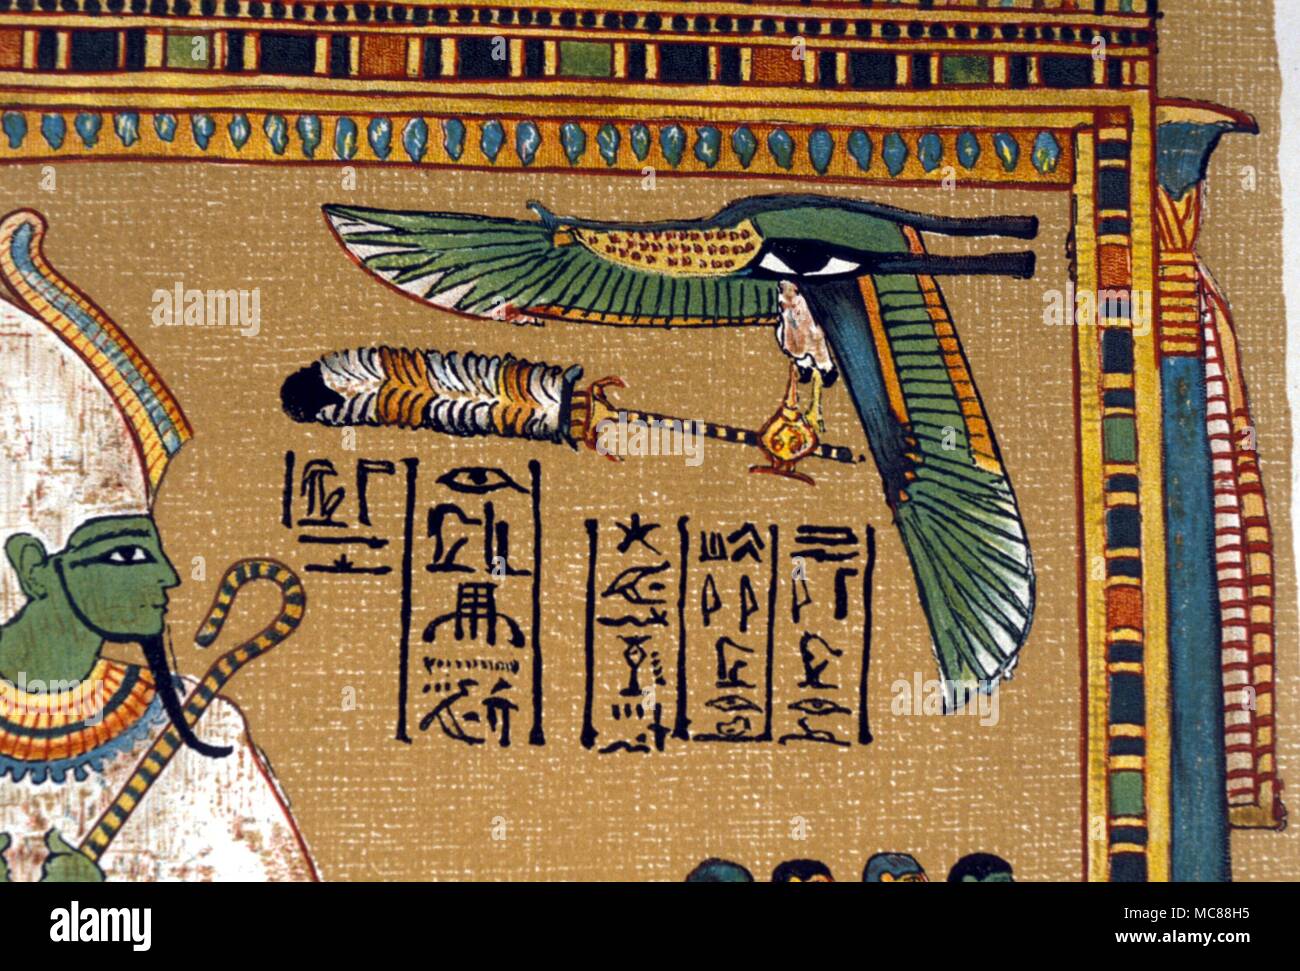 Mythe égyptien - serpent ailé serpent ailé - détail d'une scène d'Osiris intronisé au sein d'un lieu de culte. Le papyrus de Hunefer le livre des morts égyptien. Copie de la lithographie du xixe siècle. Banque D'Images